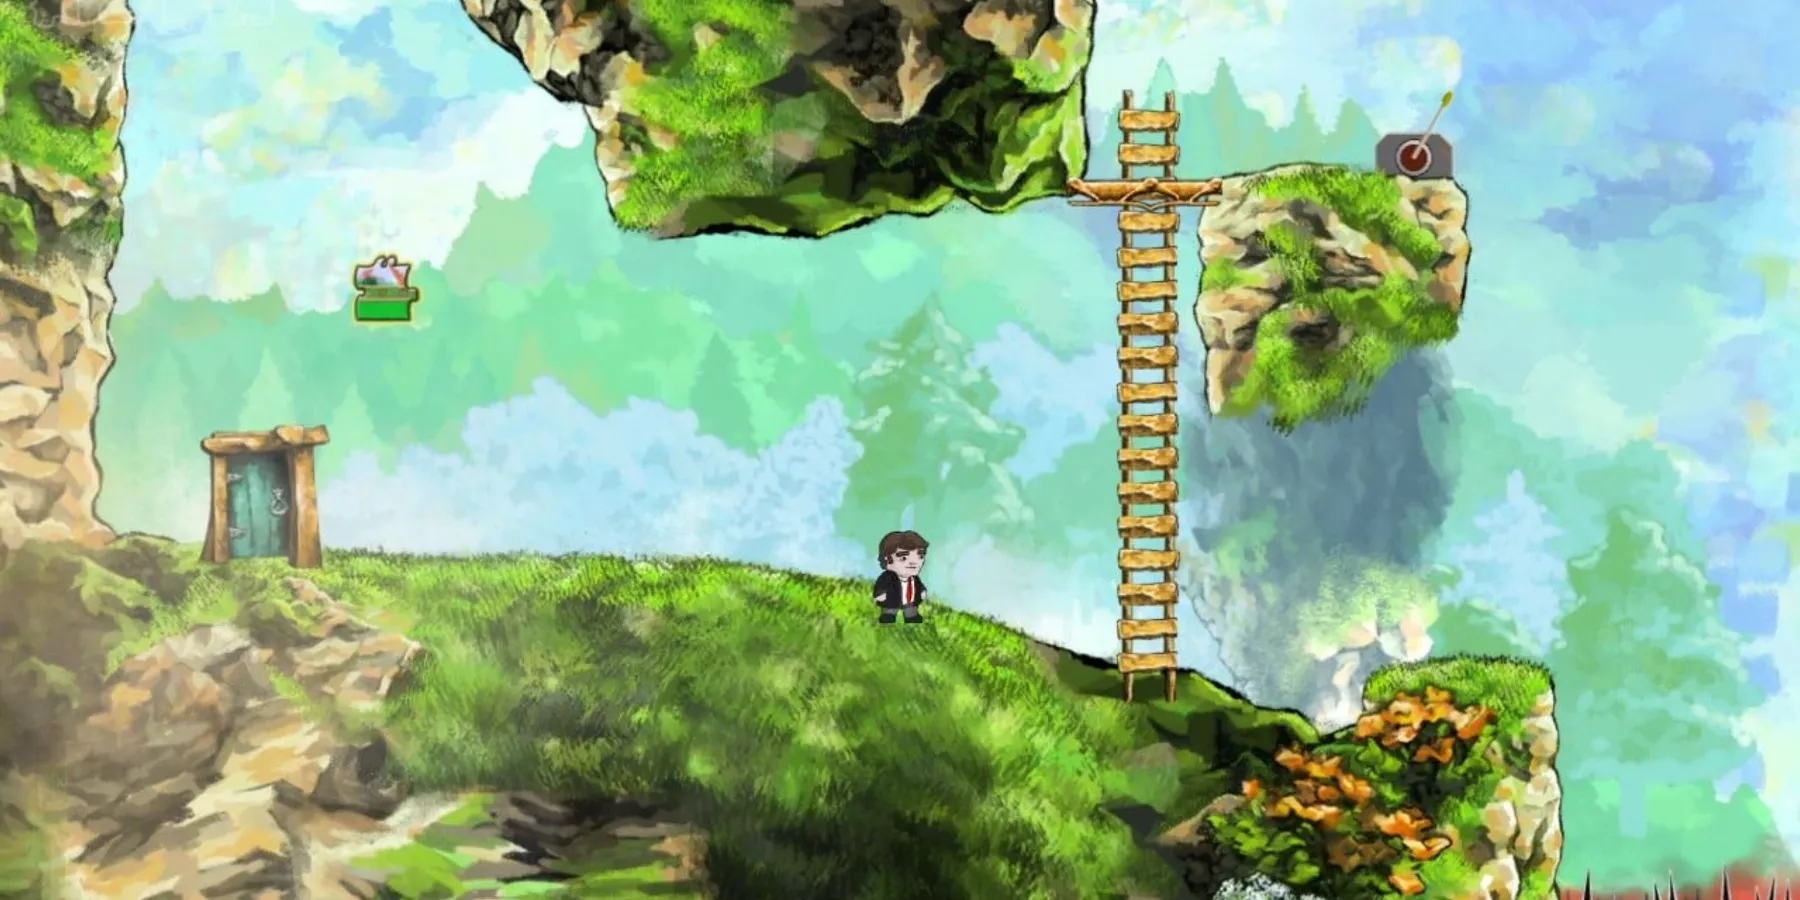 Пиксельный персонаж стоит рядом с лестницей на траве